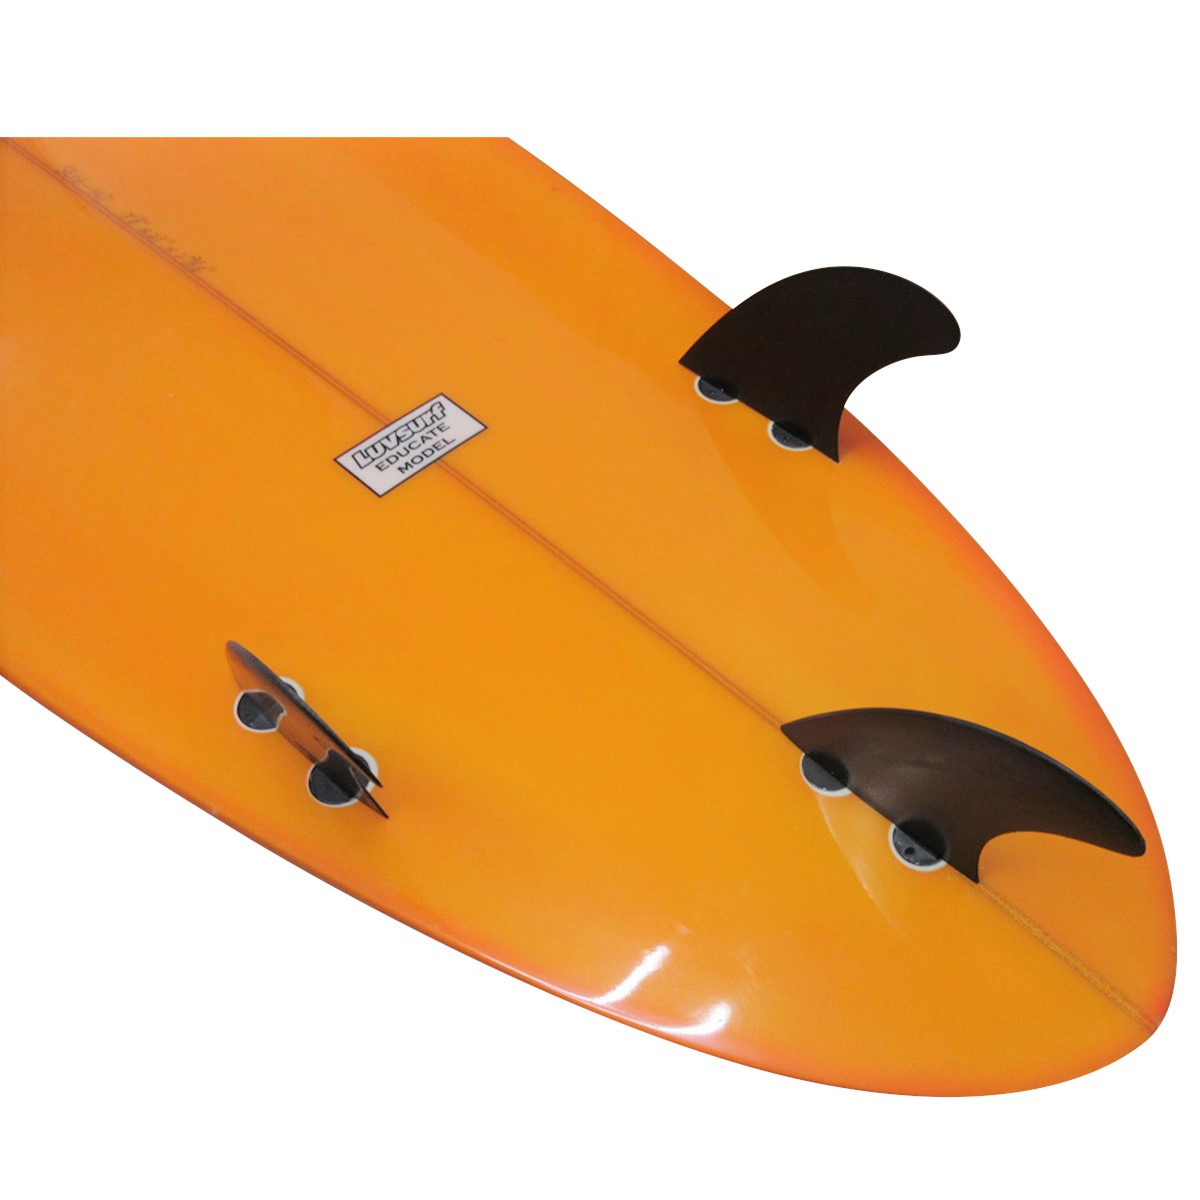 LUV SURF / EDUCATE MODEL 7`6